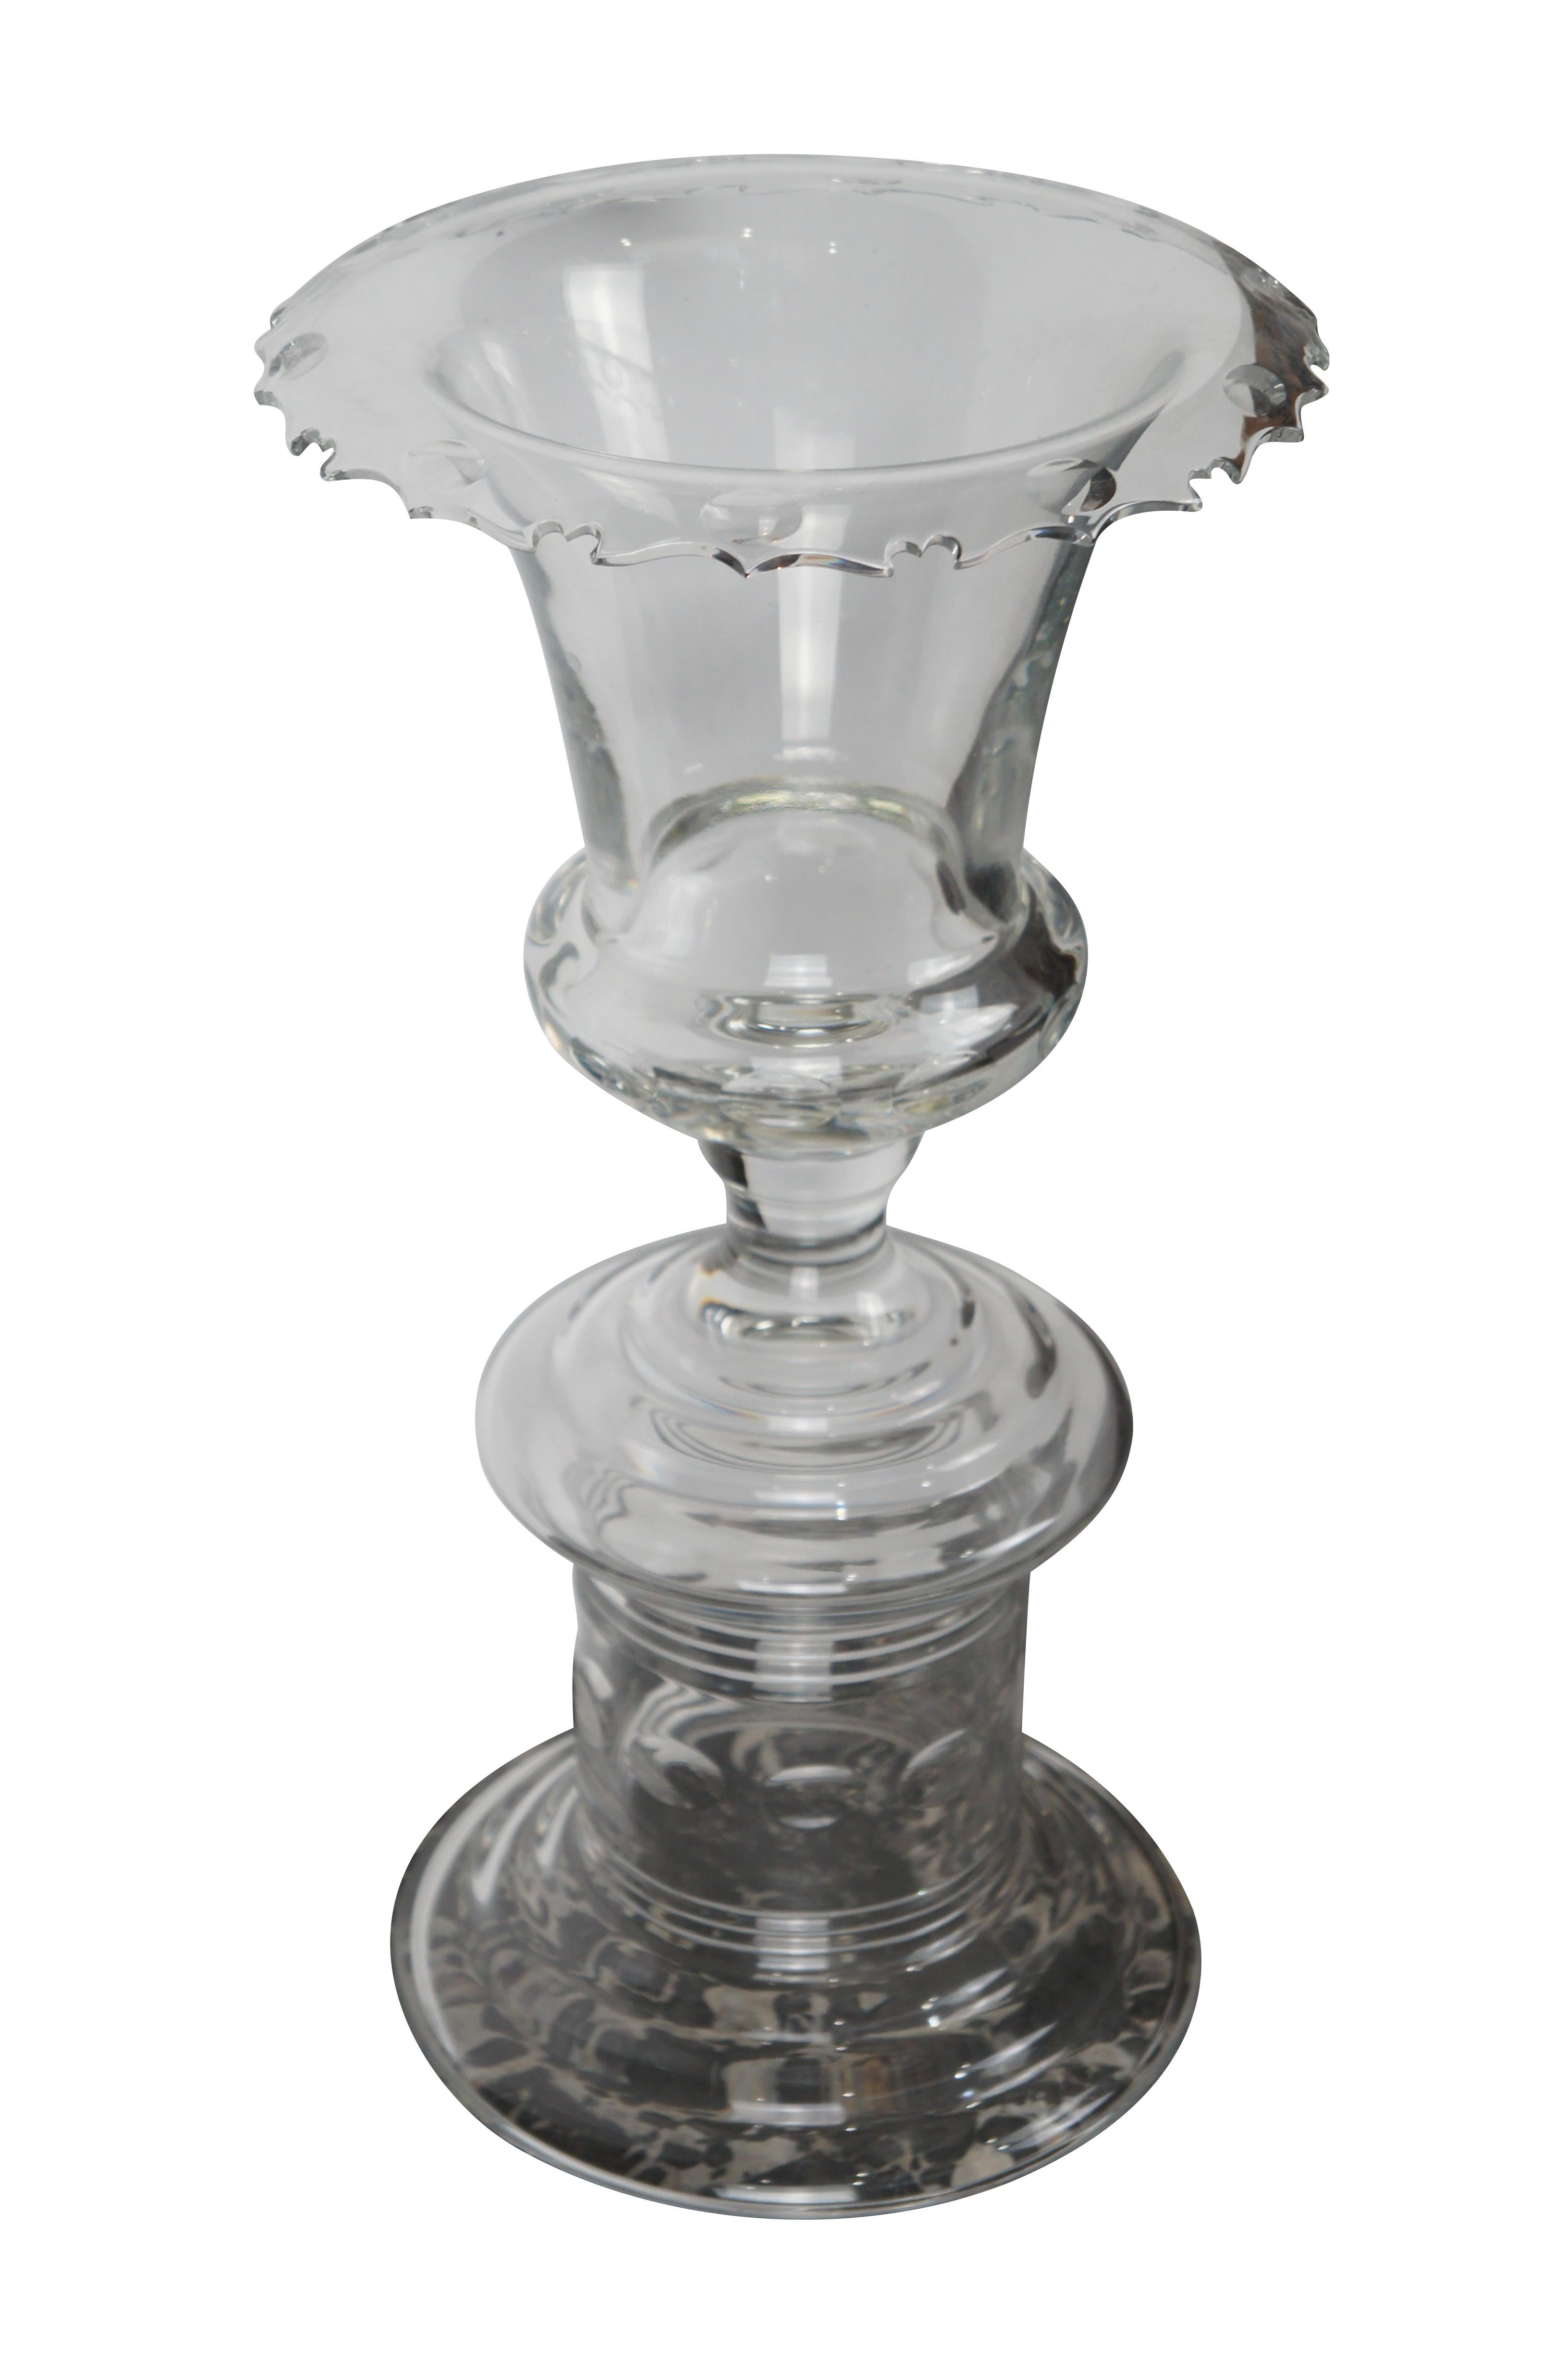 Grand et impressionnant vase en cristal de la Collection Sals de William Yeoward. L'urne / vase à fleurs trophée présente des motifs de points de monnaie coupés et des accents nervurés sur une base à pieds fatigués. Le vase a une embouchure évasée